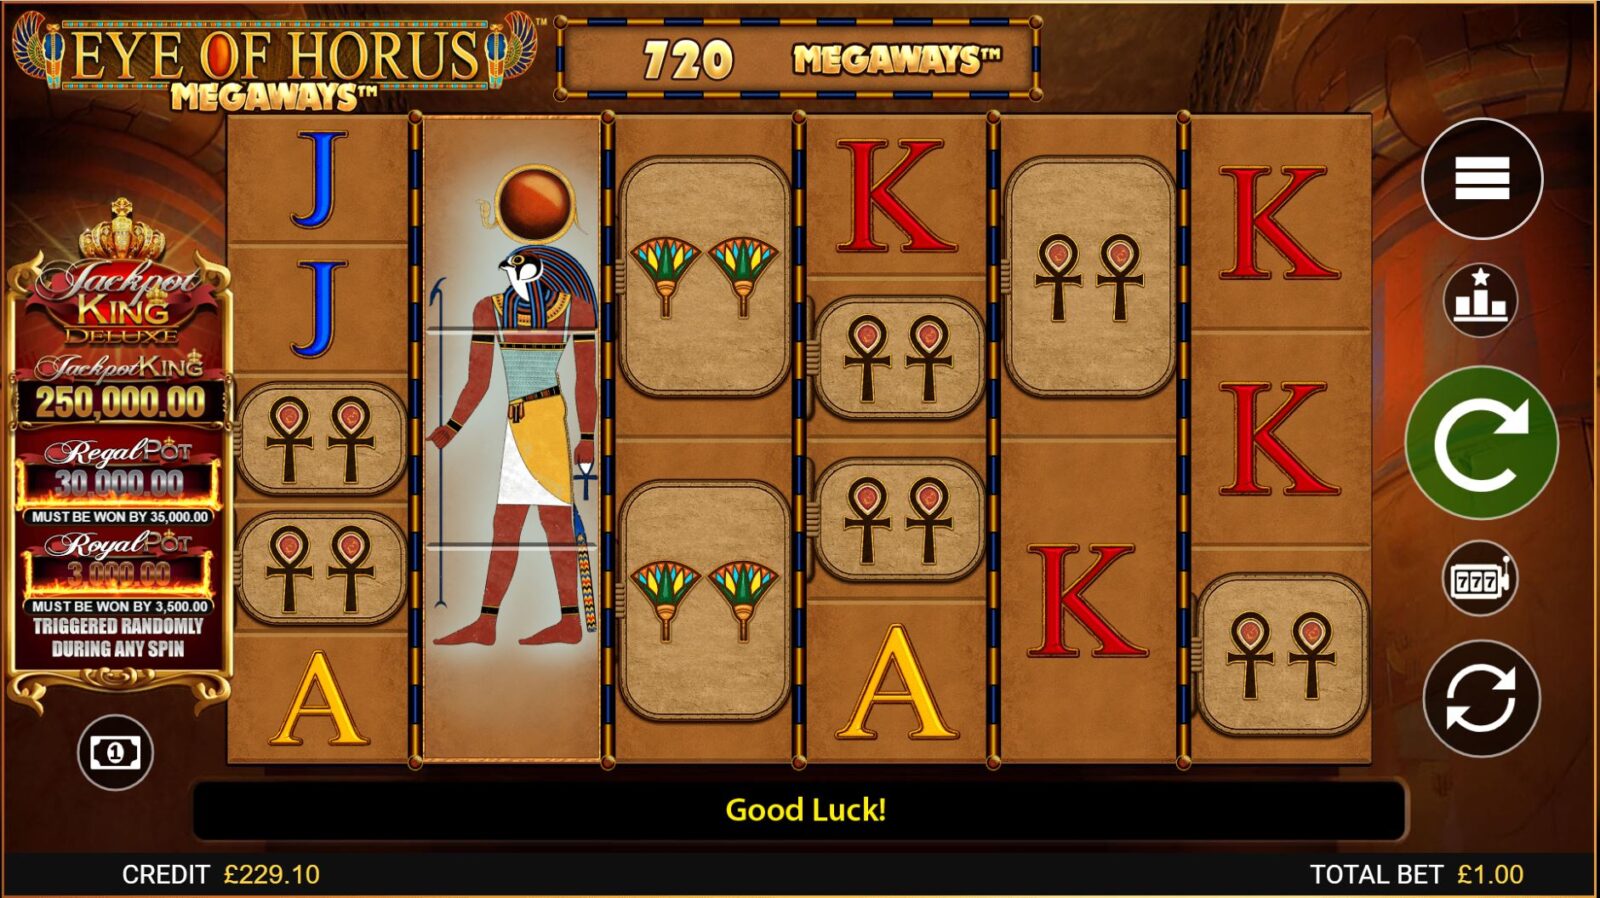 Juega a la slot Eye of horus megaways en modo demo gratuito